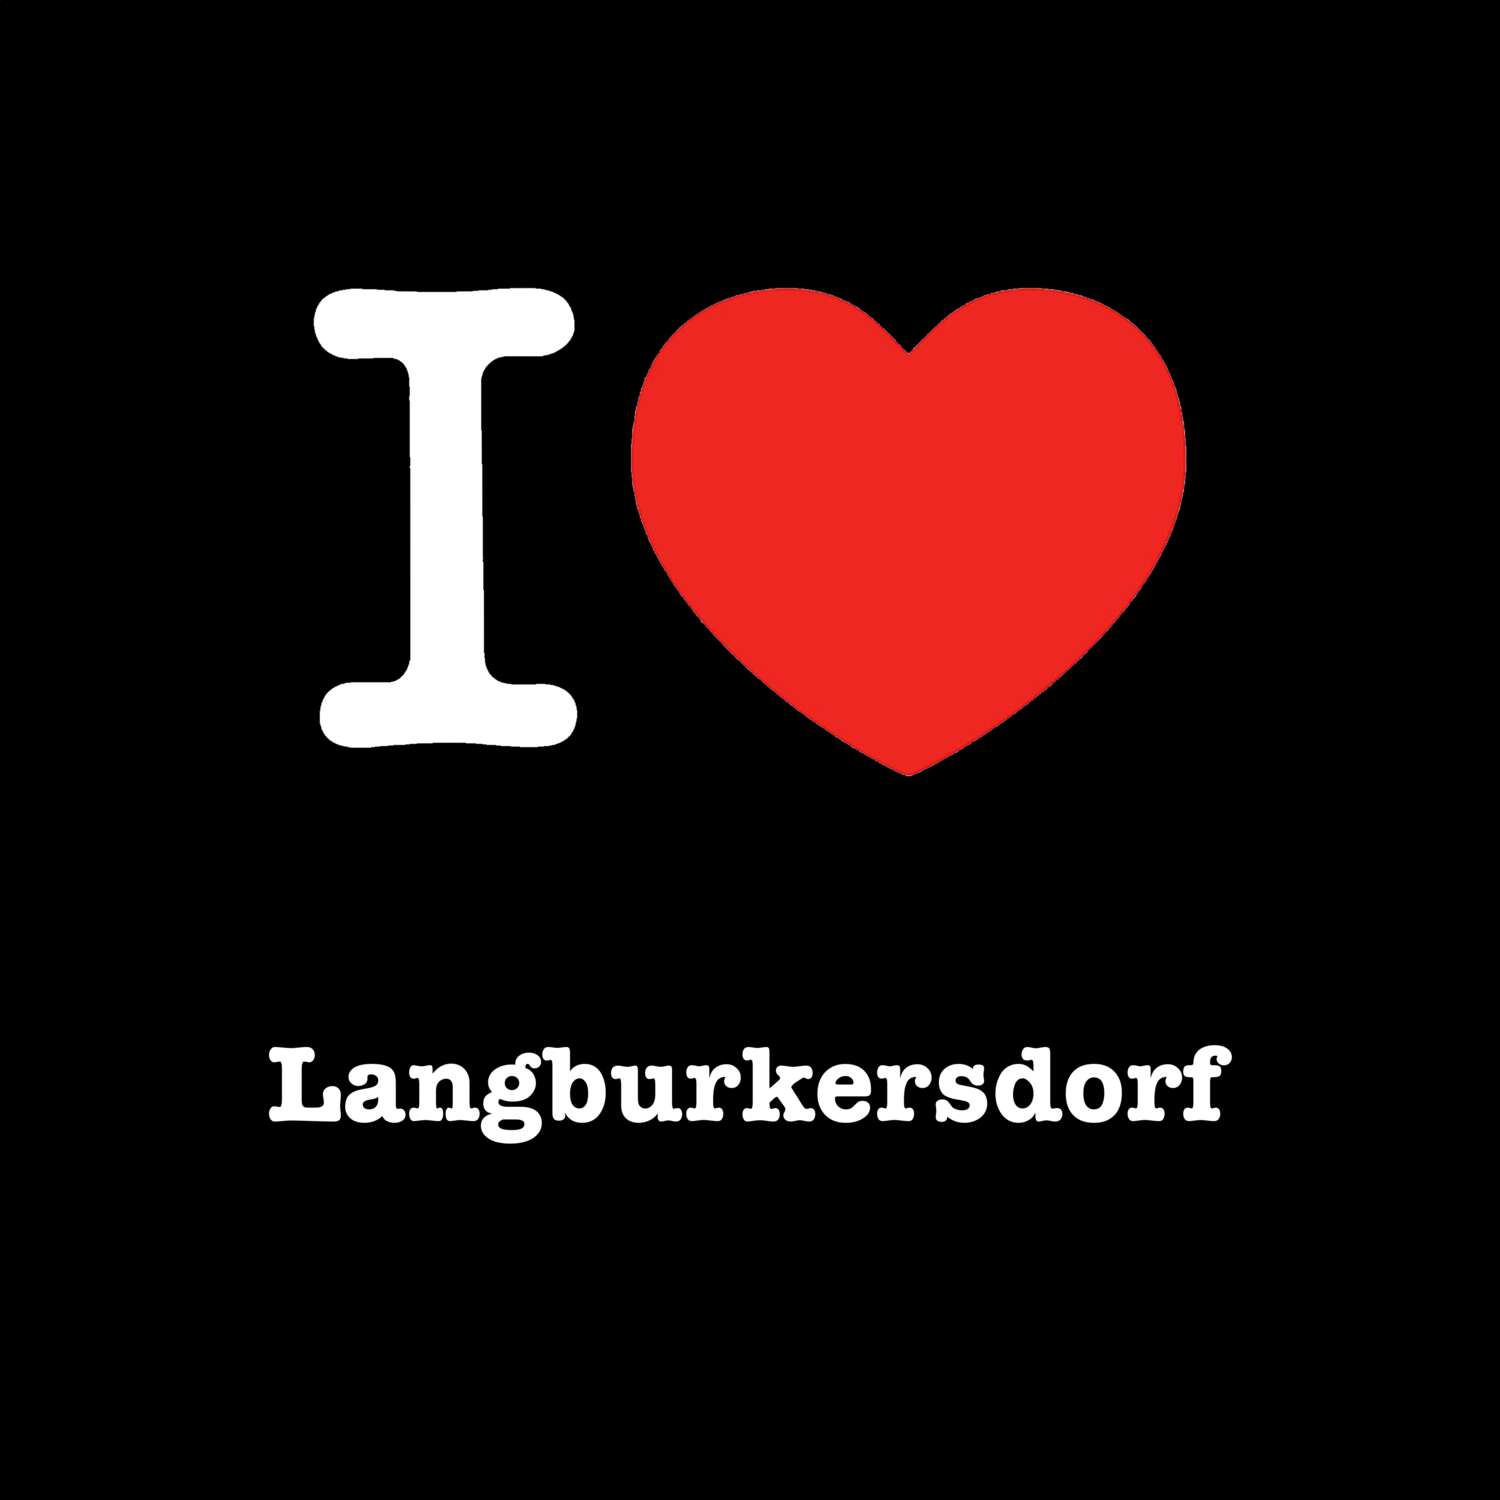 Langburkersdorf T-Shirt »I love«